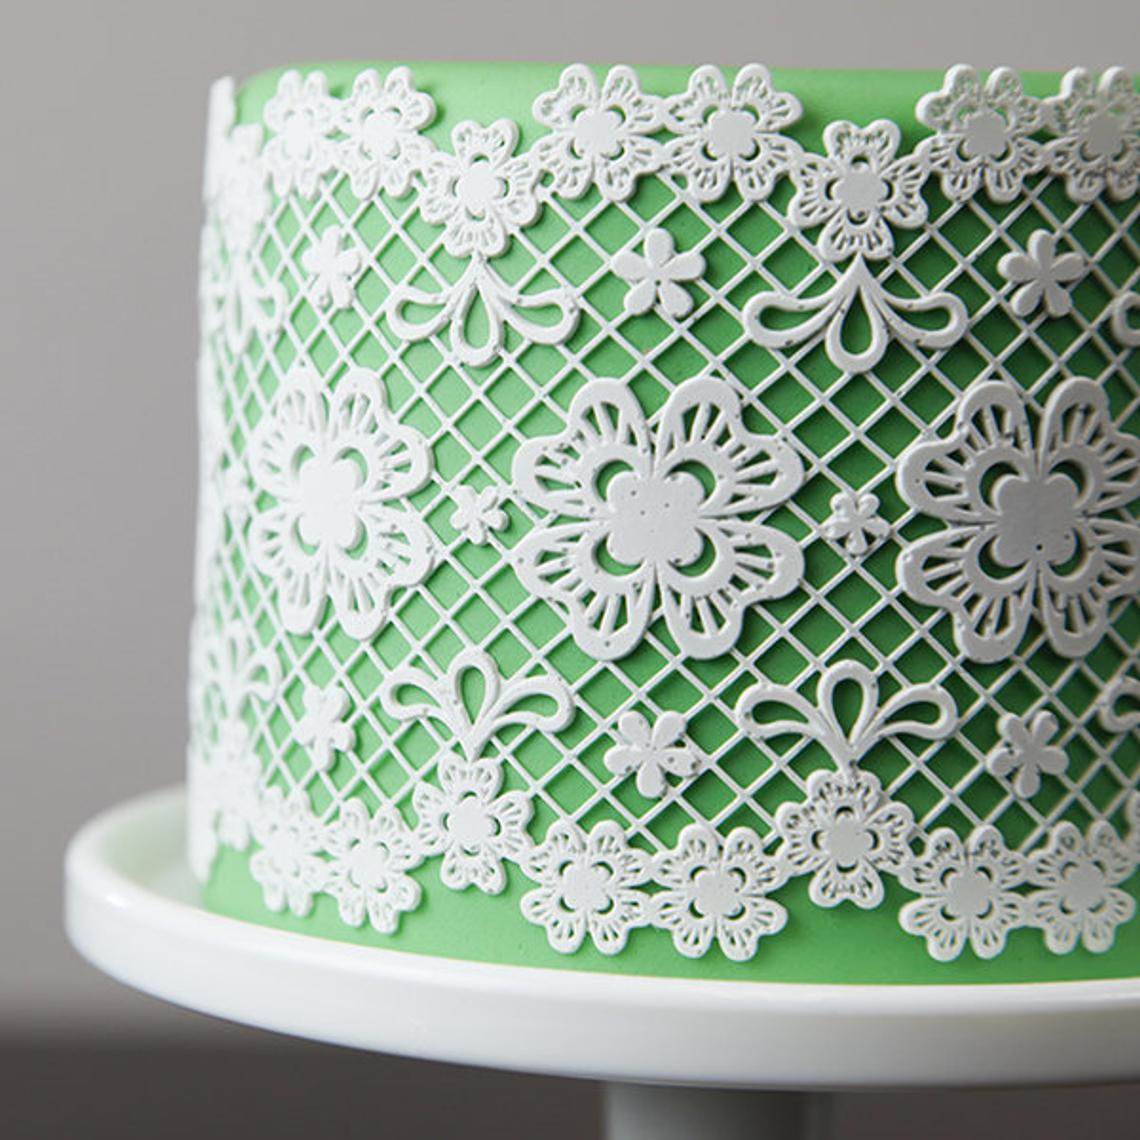 CHANTILLY Cake Lace Matt Design